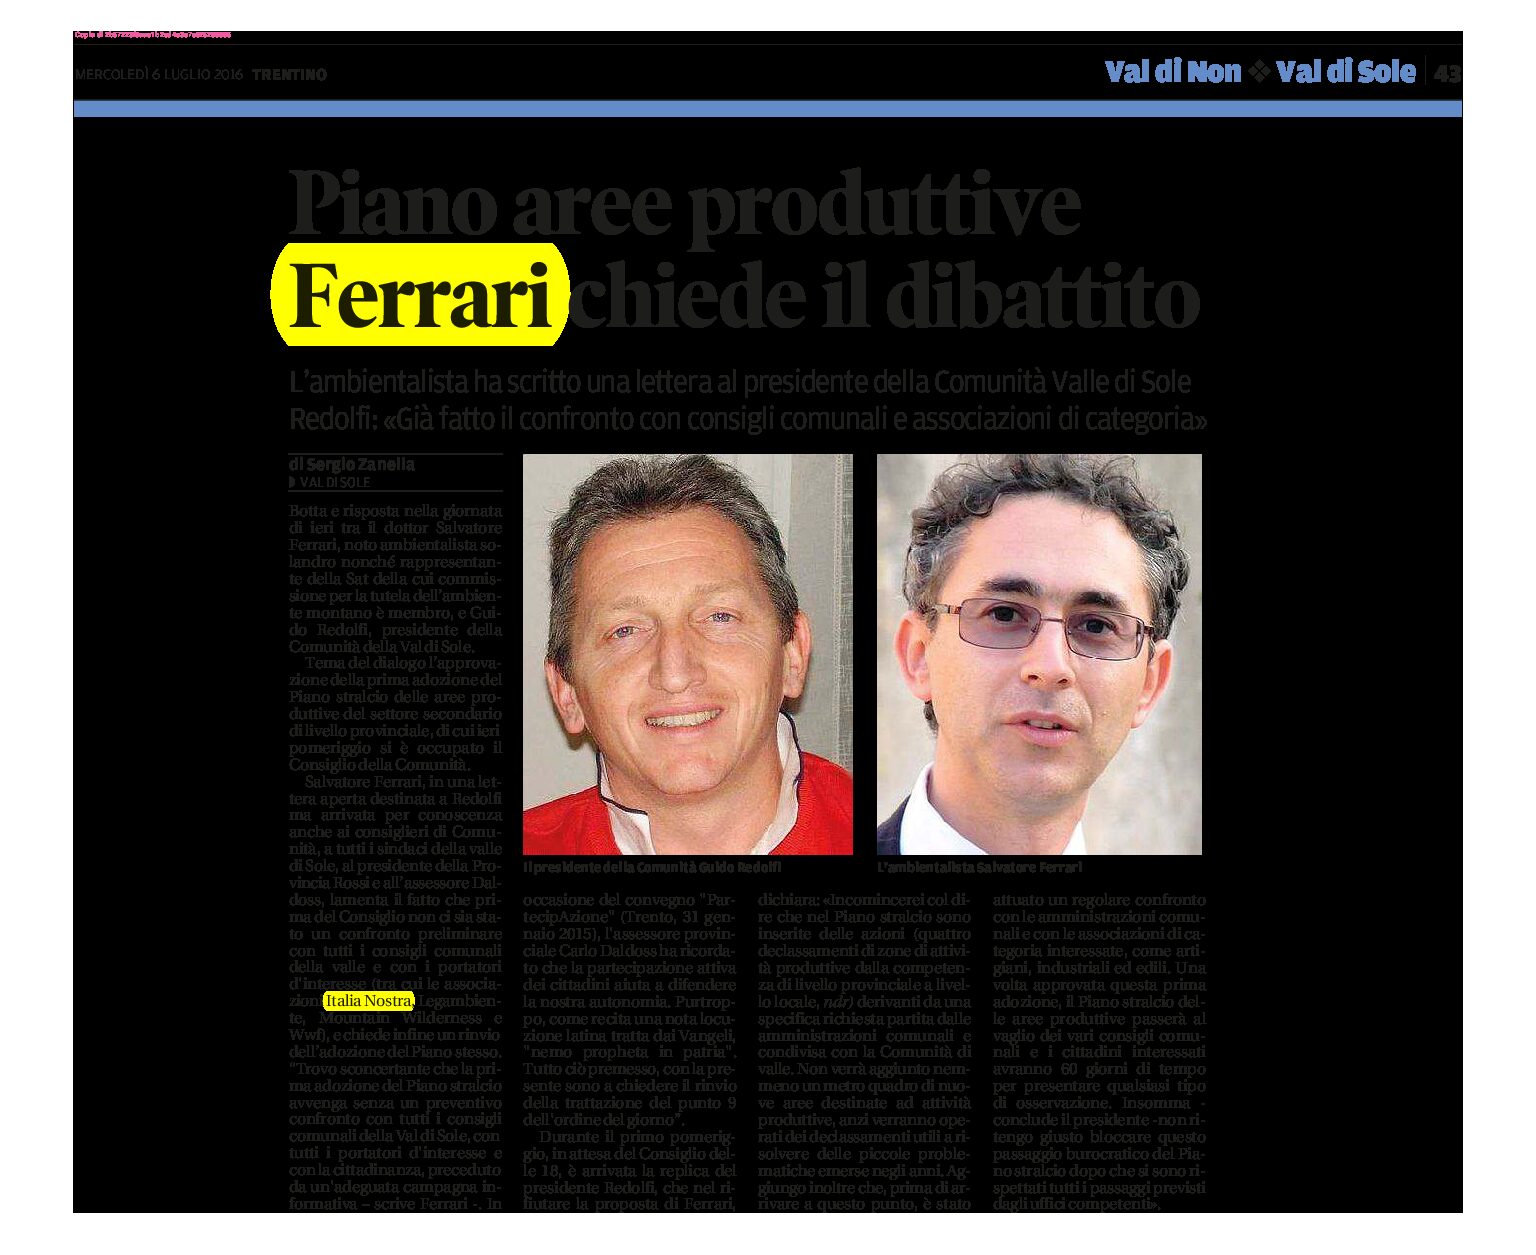 Val di Sole: piano aree produttive, Ferrari chiede il dibattito